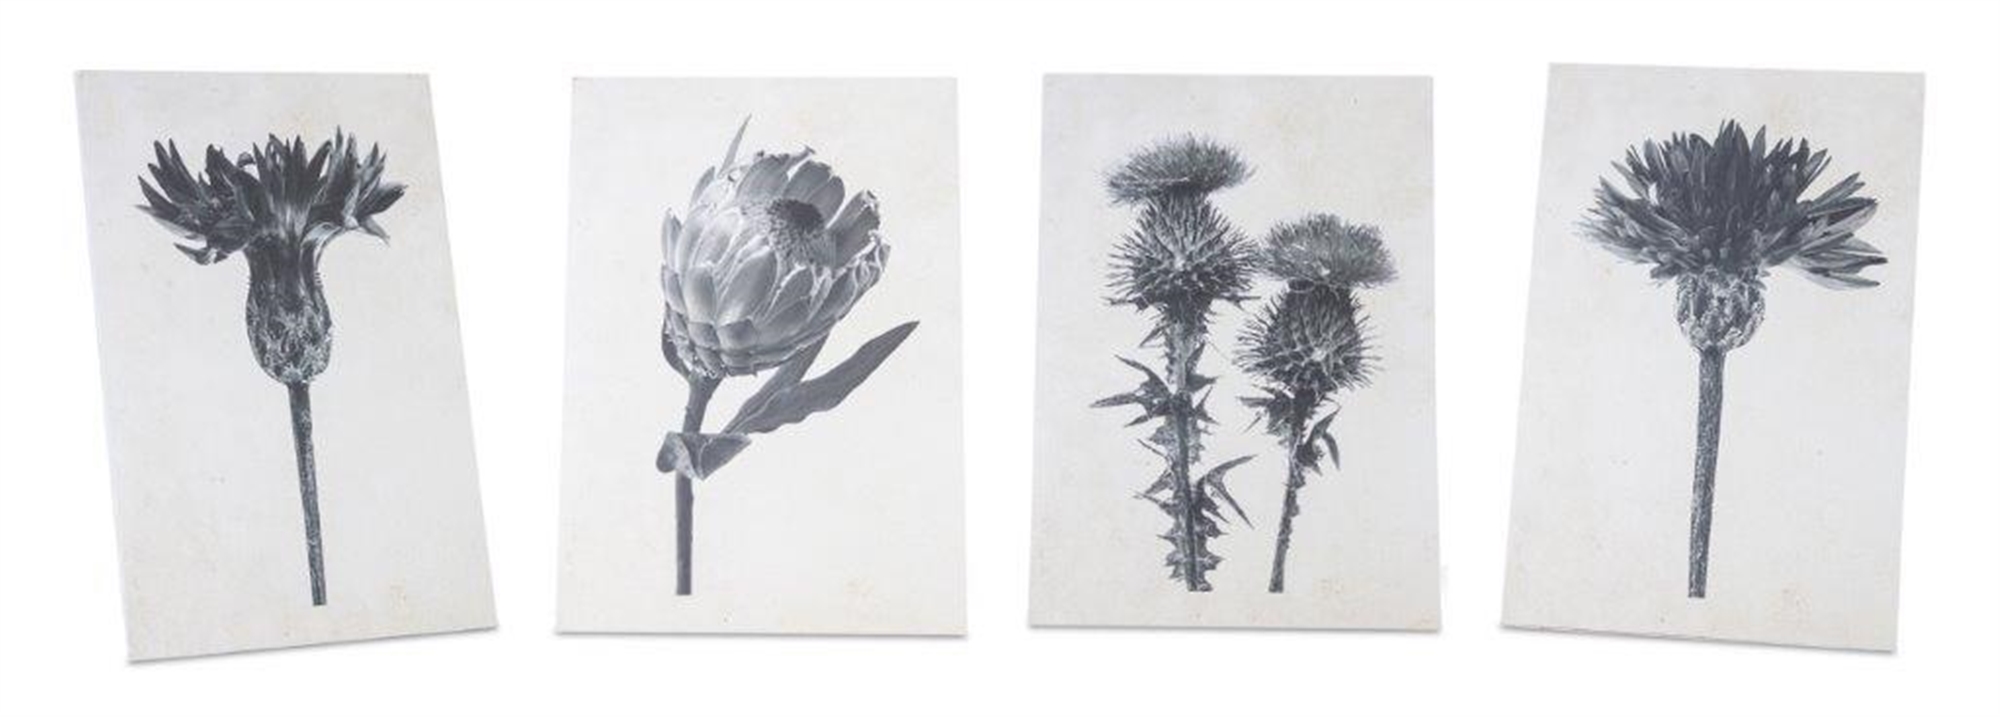 Botanical Print (Set of 4) 8"L x 11.5"H Wood/MDF/Paper